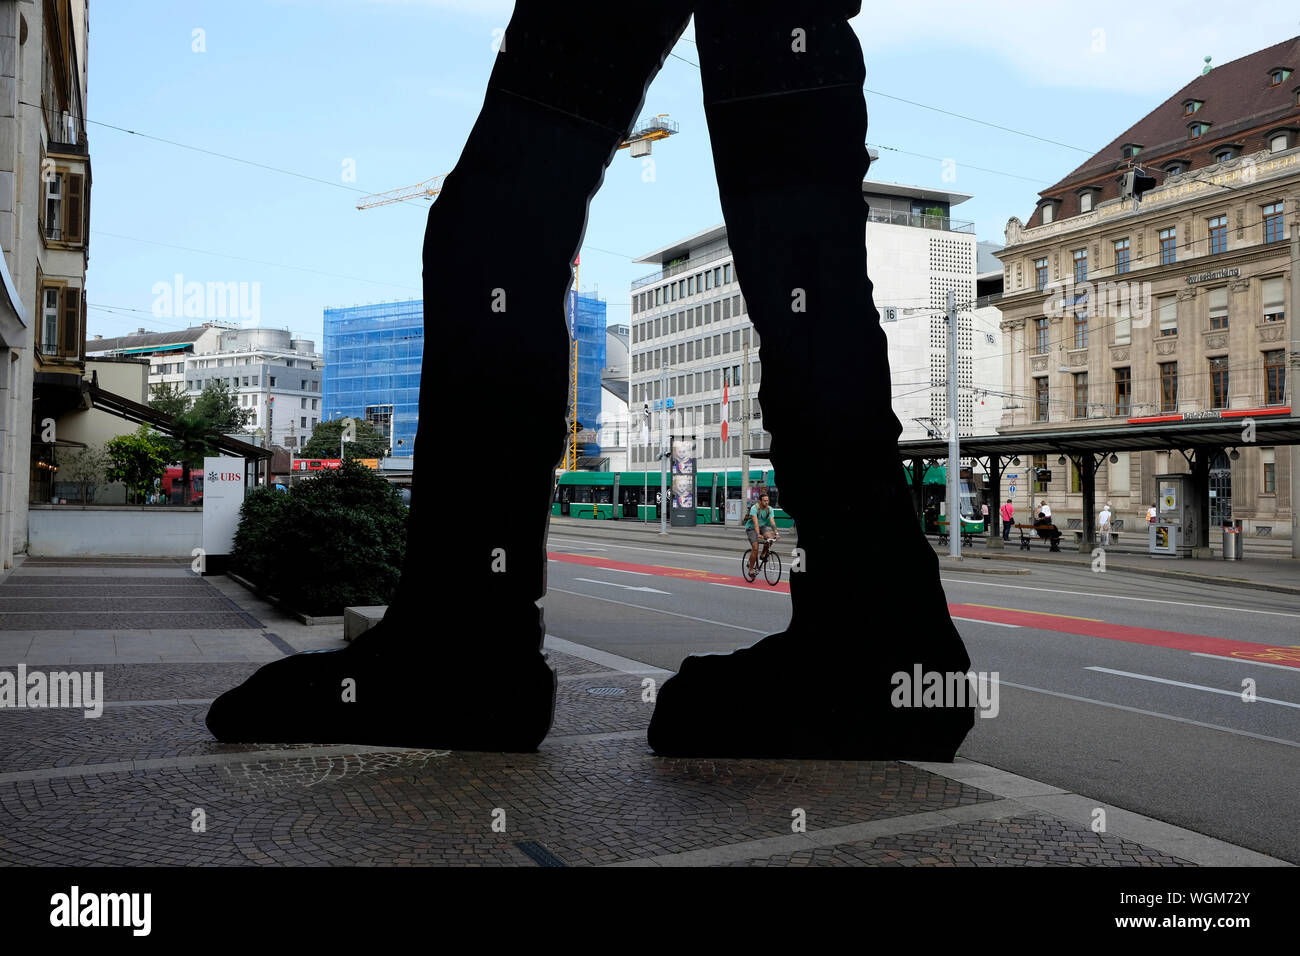 Hammering man, une sculpture géante de l'artiste américain Jonathan Borofsky. Bâle, Suisse Banque D'Images